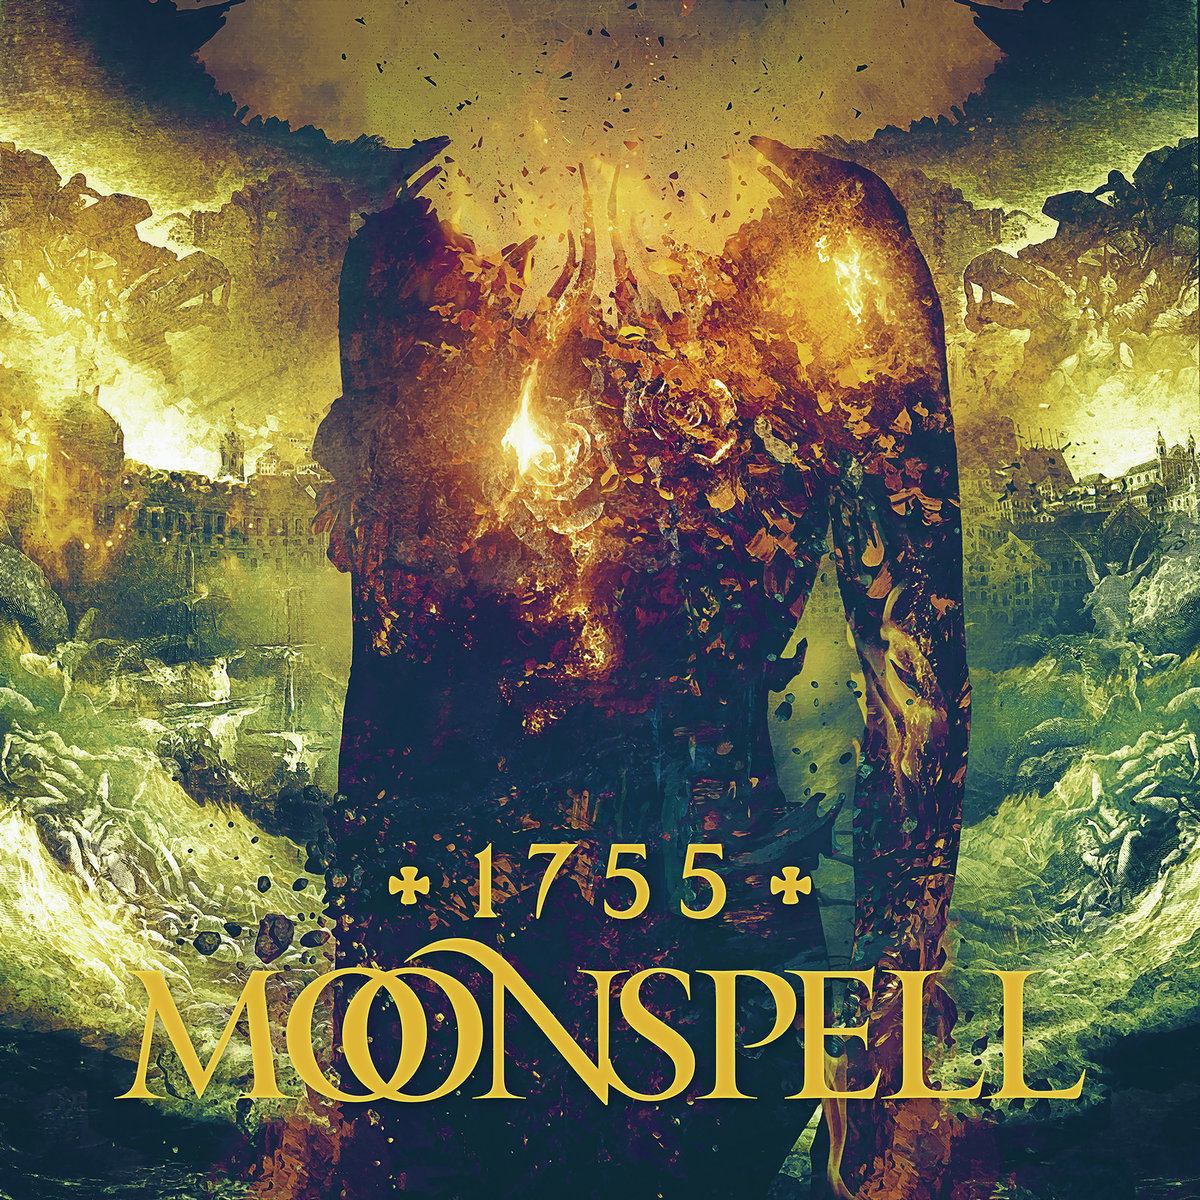 Moonspell: 1755